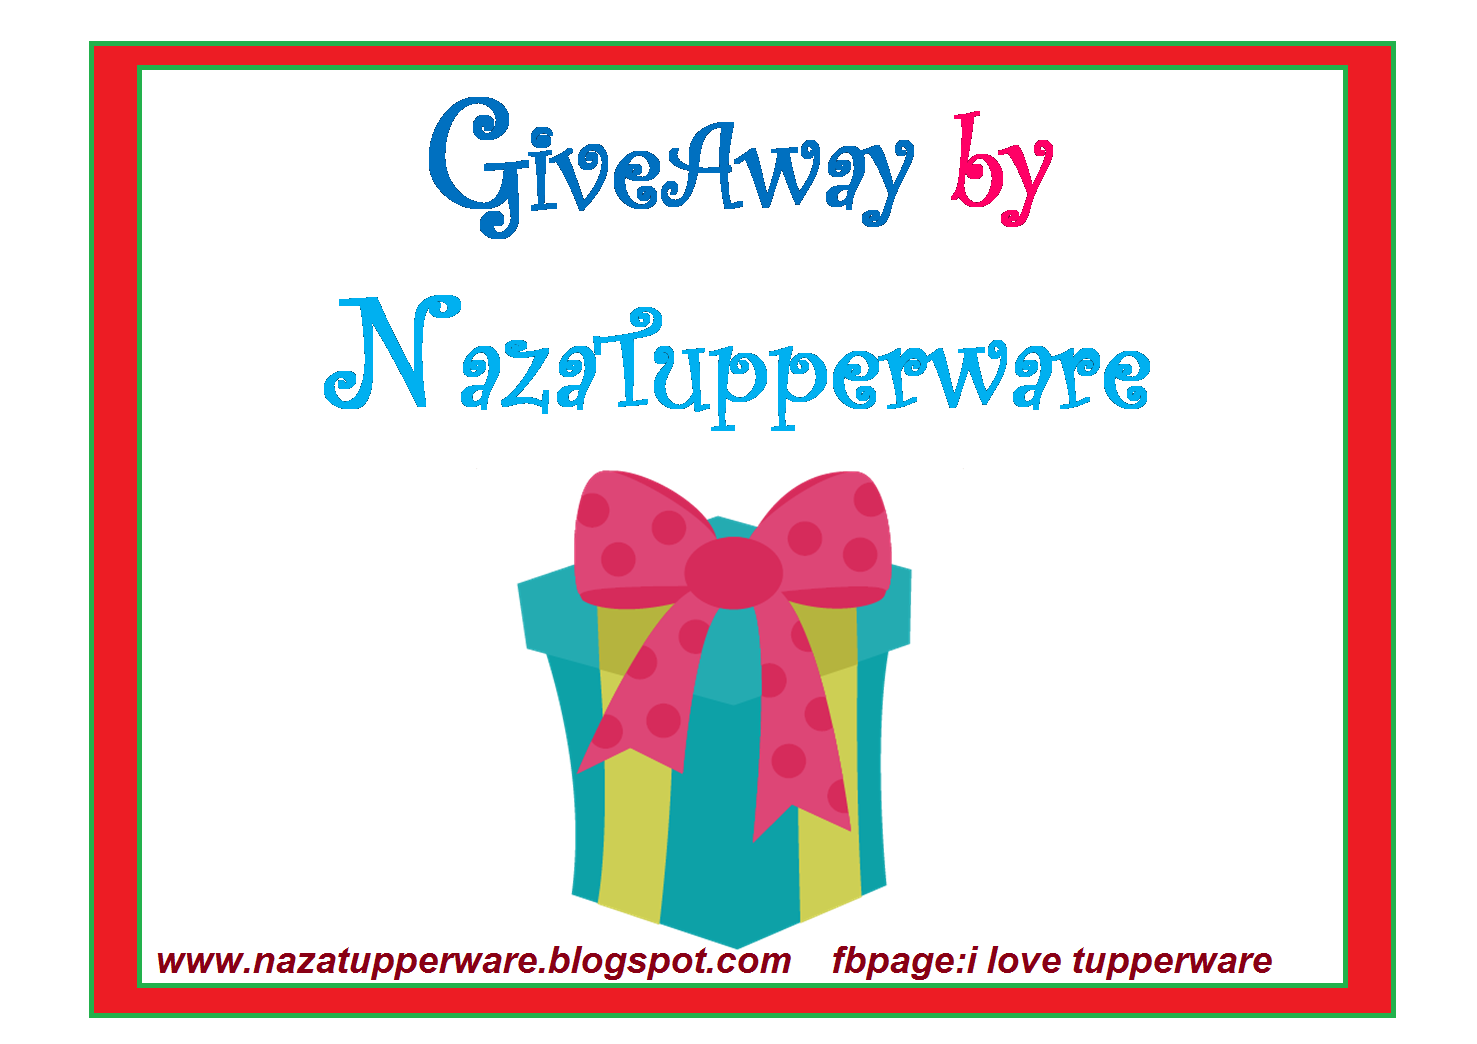 http://nazatupperware.blogspot.com/2014/09/giveaway-by-nazatupperware-jom-join.html